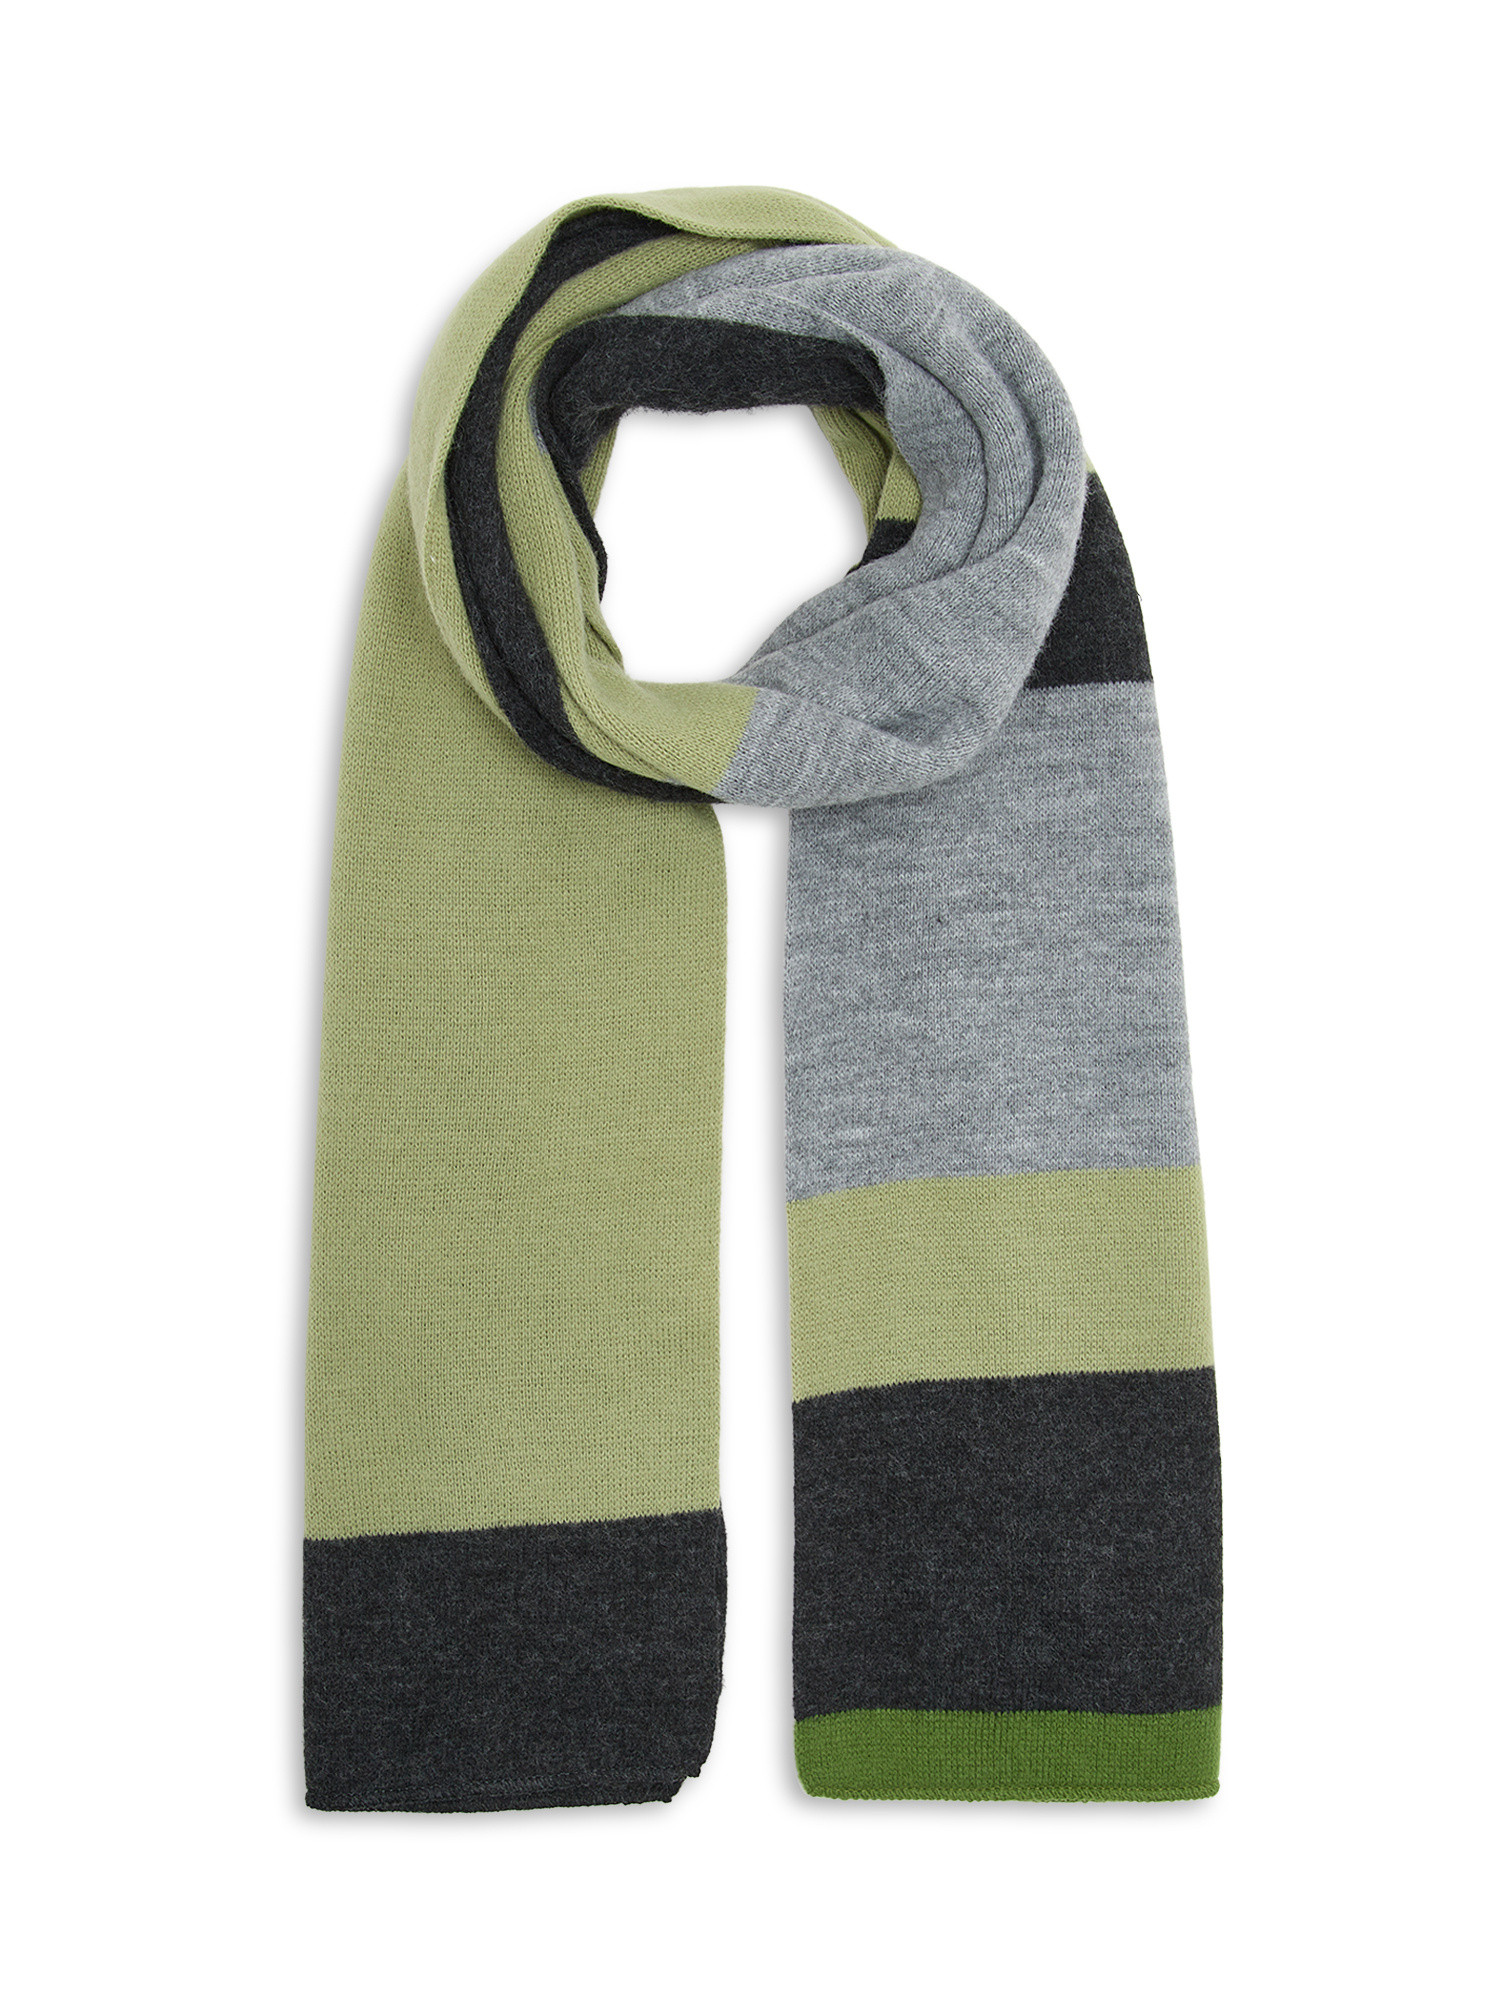 Koan - Geometric motif knit scarf, Grey, large image number 0